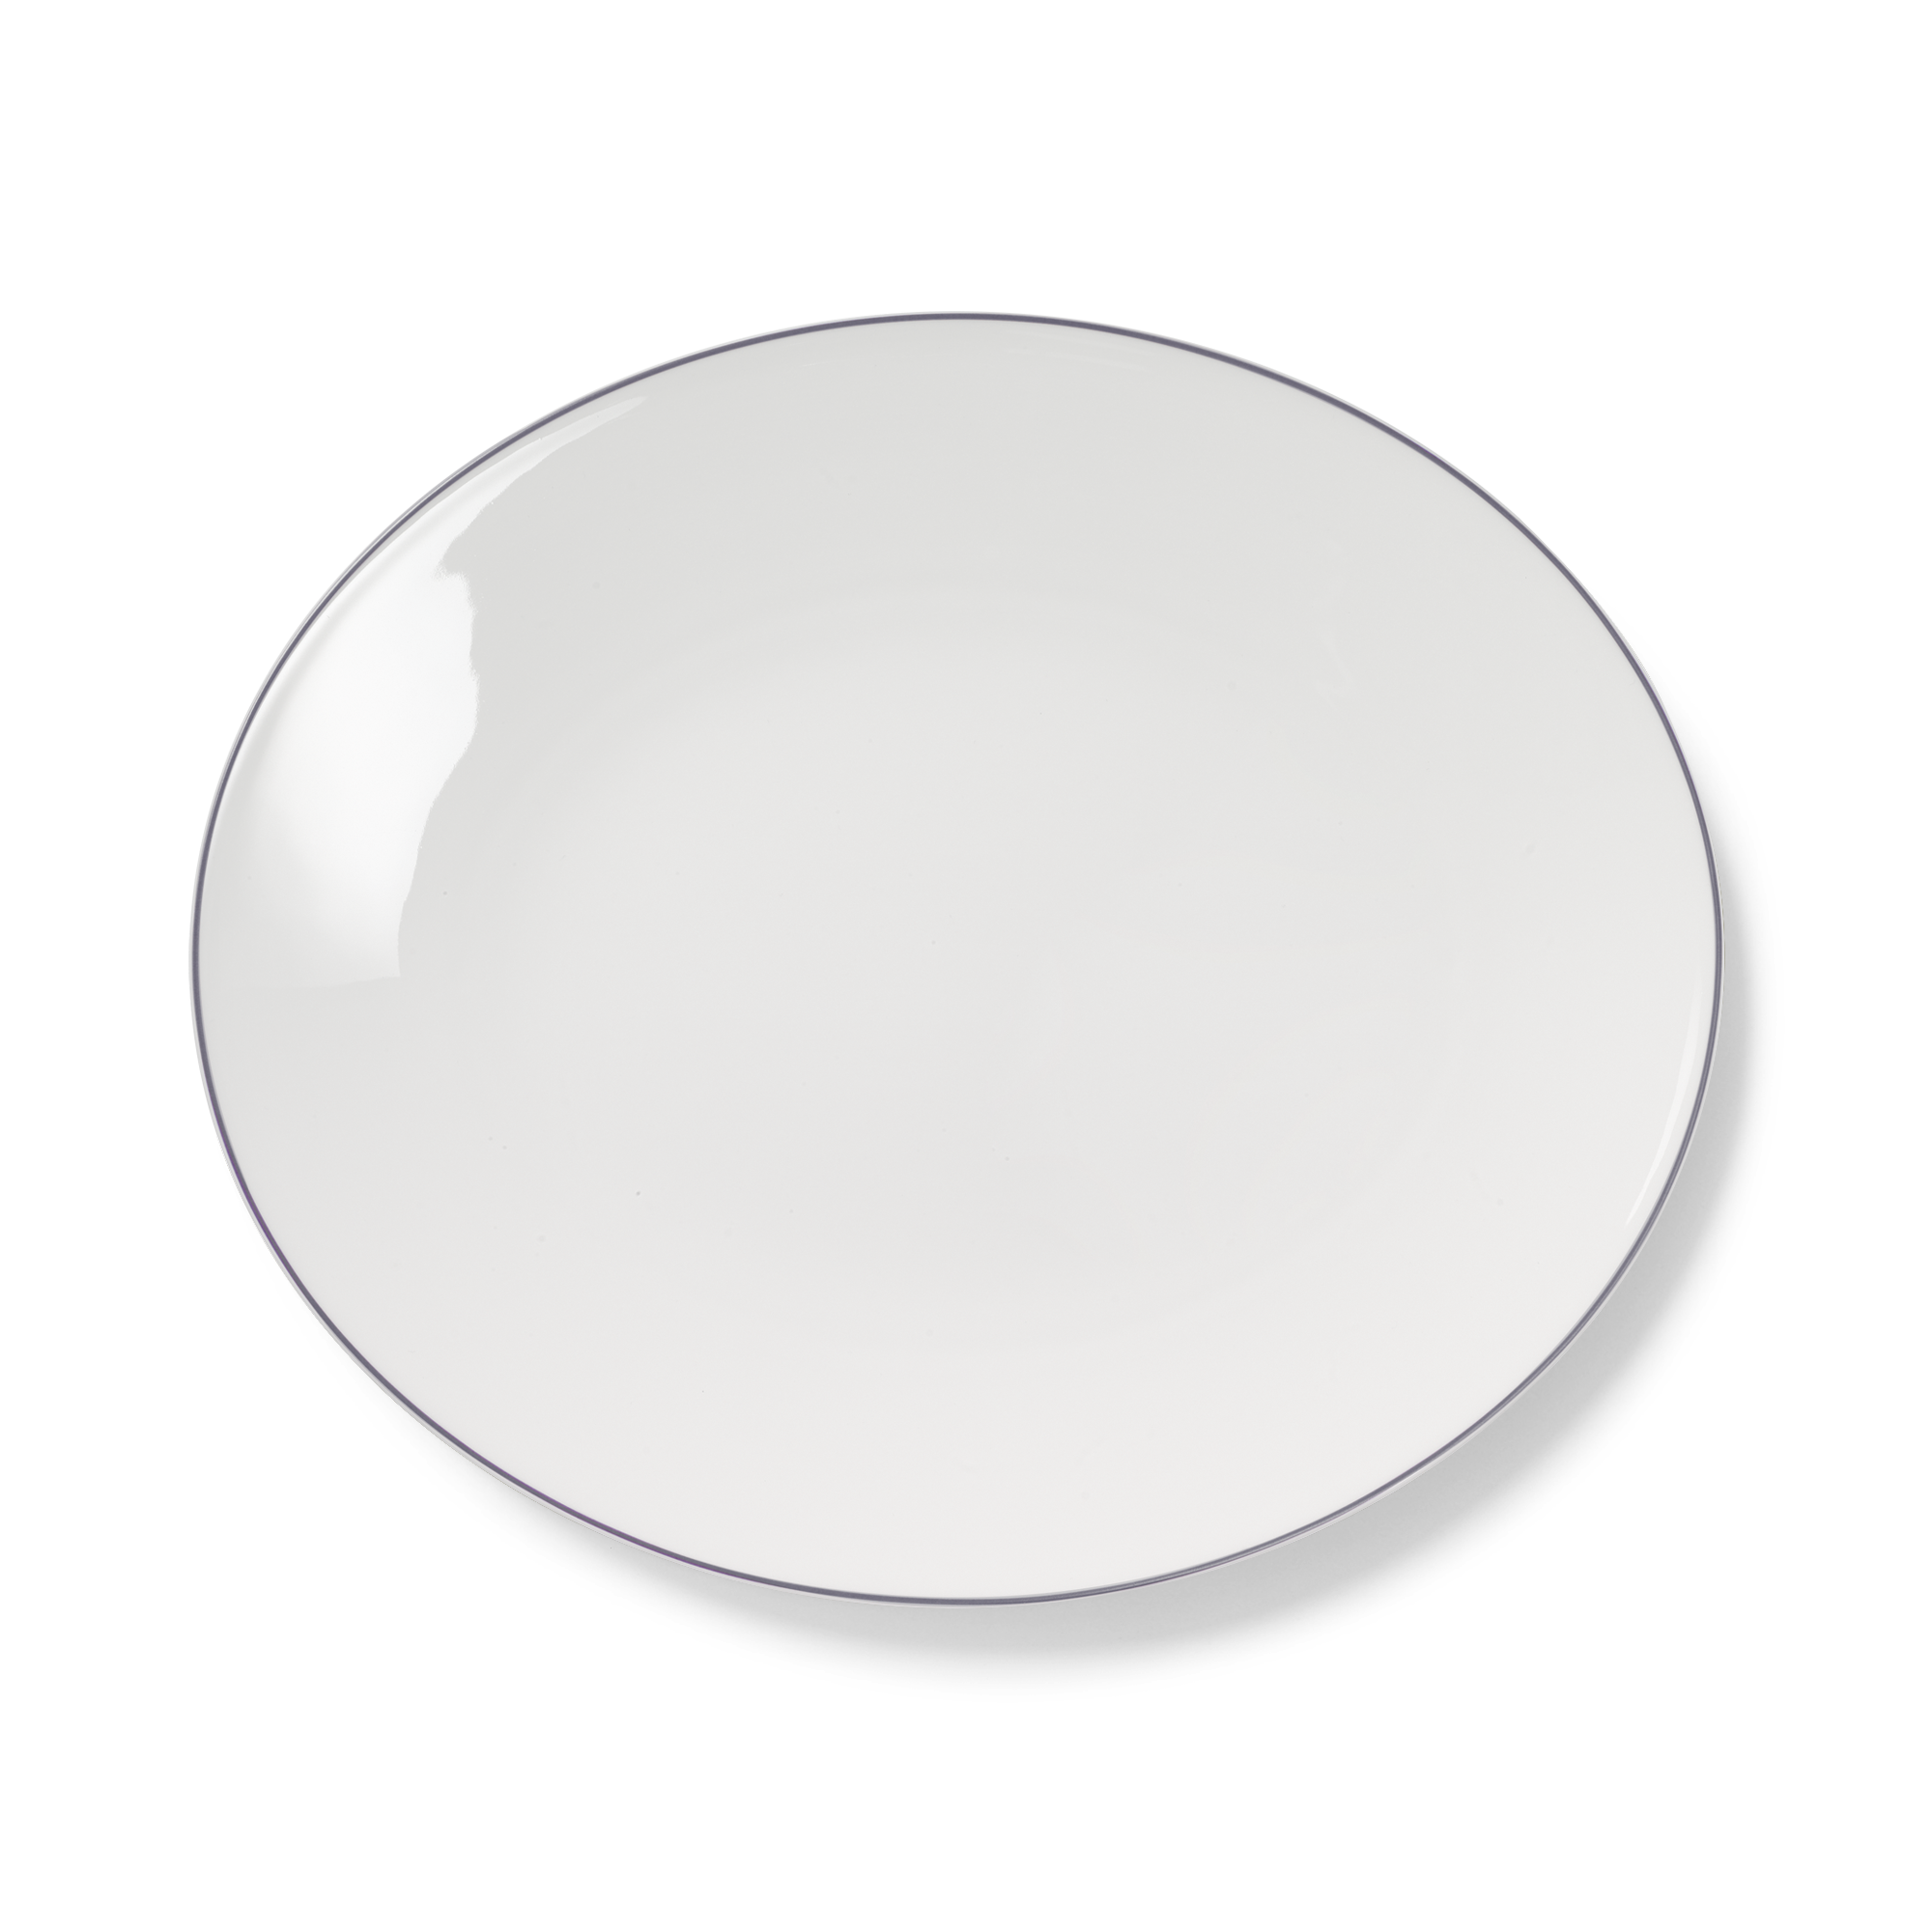 Platte oval 39 cm Simplicity Grau Dibbern